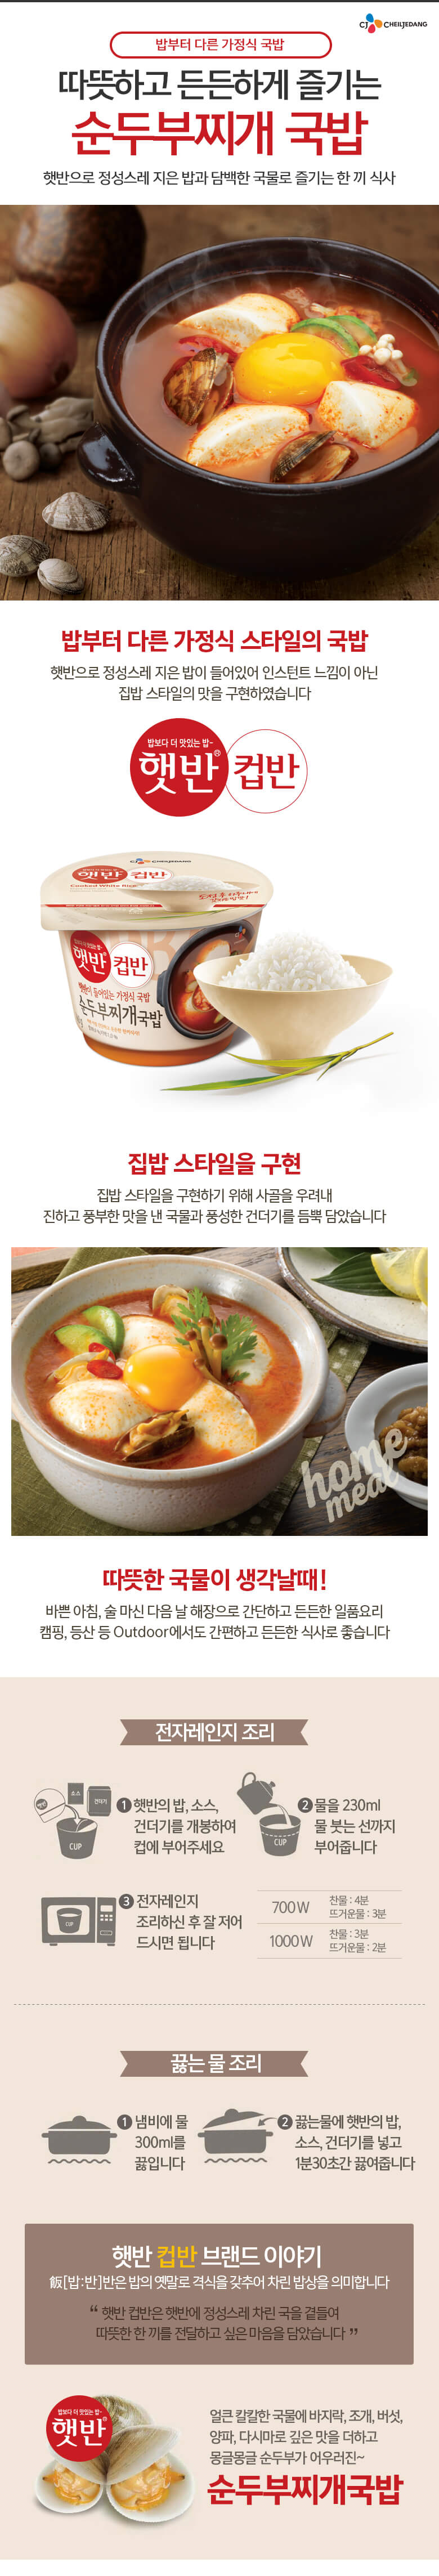 韓國食品-[CJ] Cup Rice[Clam Soft Tofu Stew Sauce] 173g